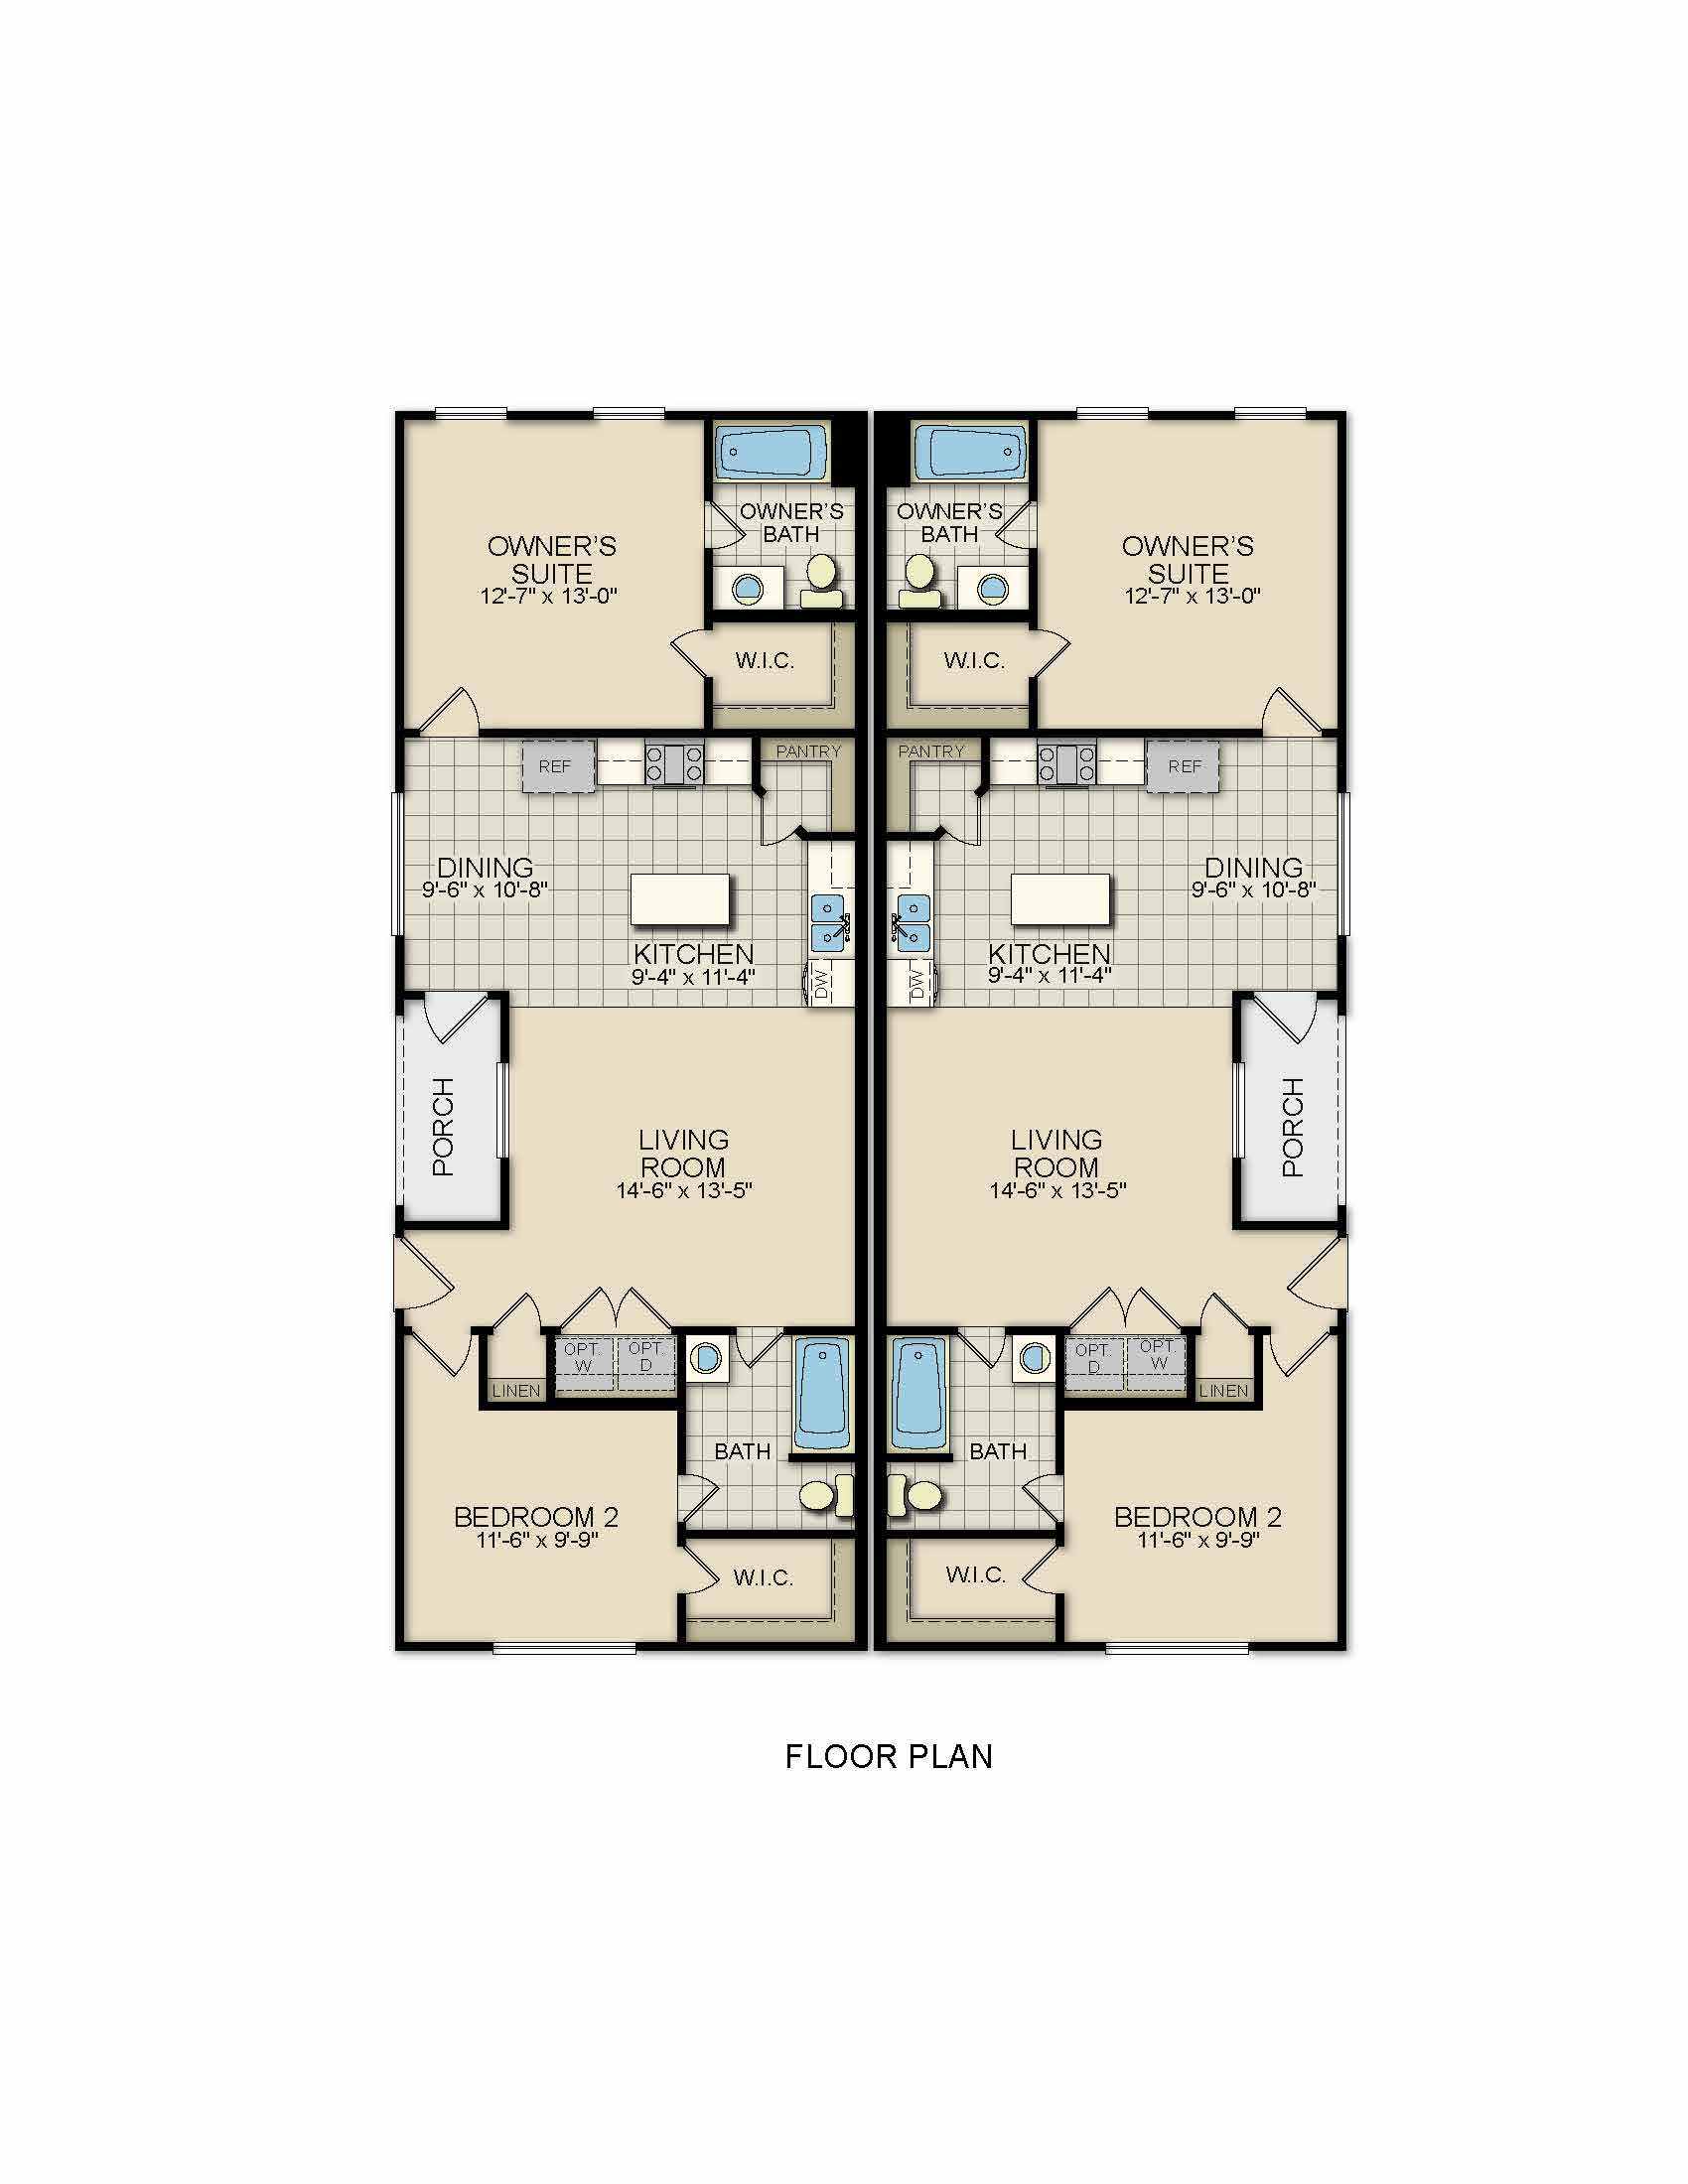 Pecos floor plan 997 sq ft